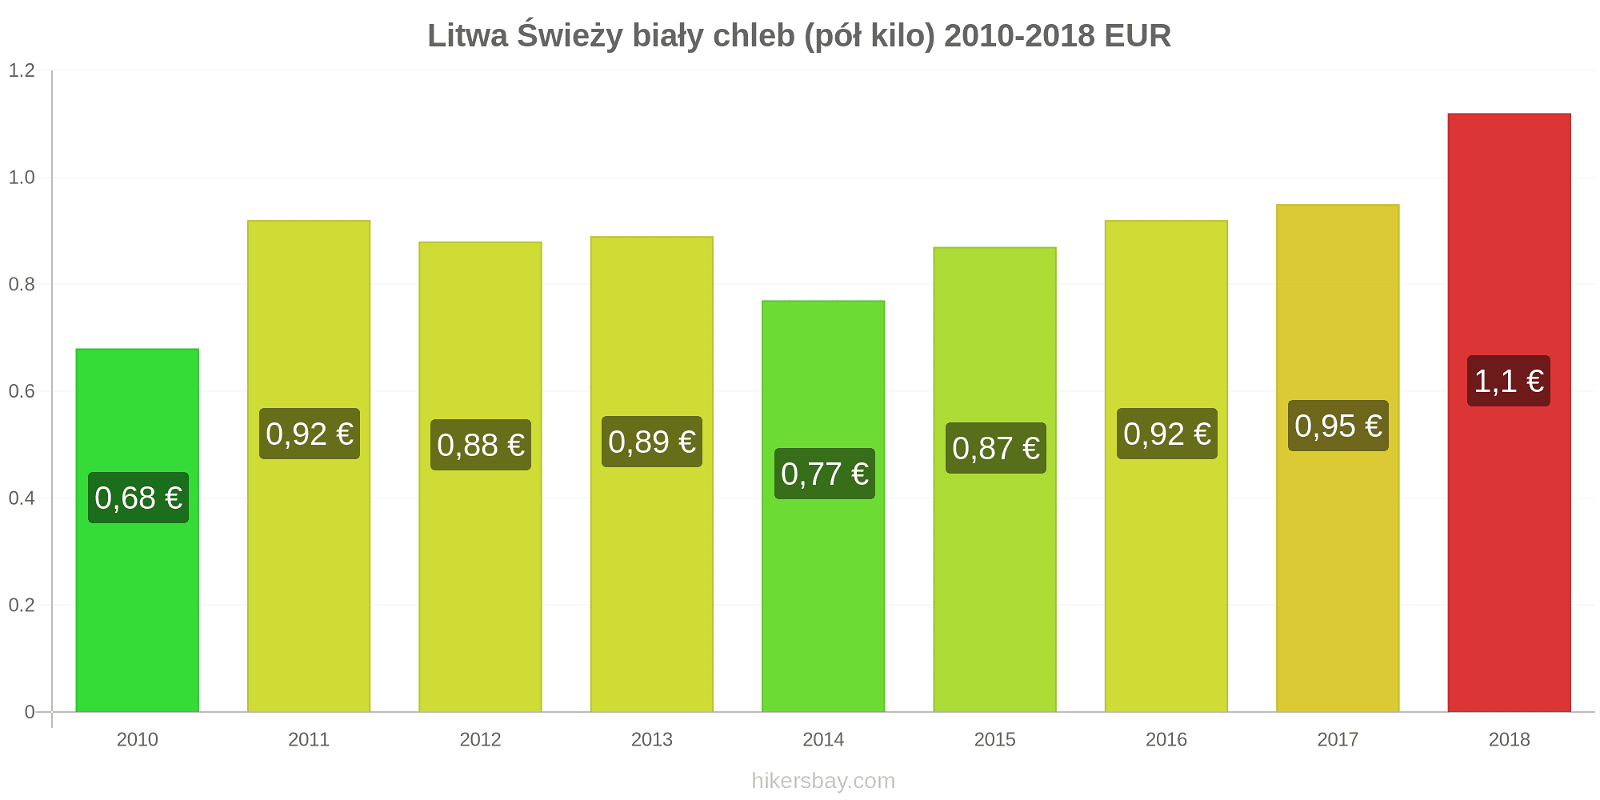 Litwa zmiany cen Chleb pół kilo hikersbay.com